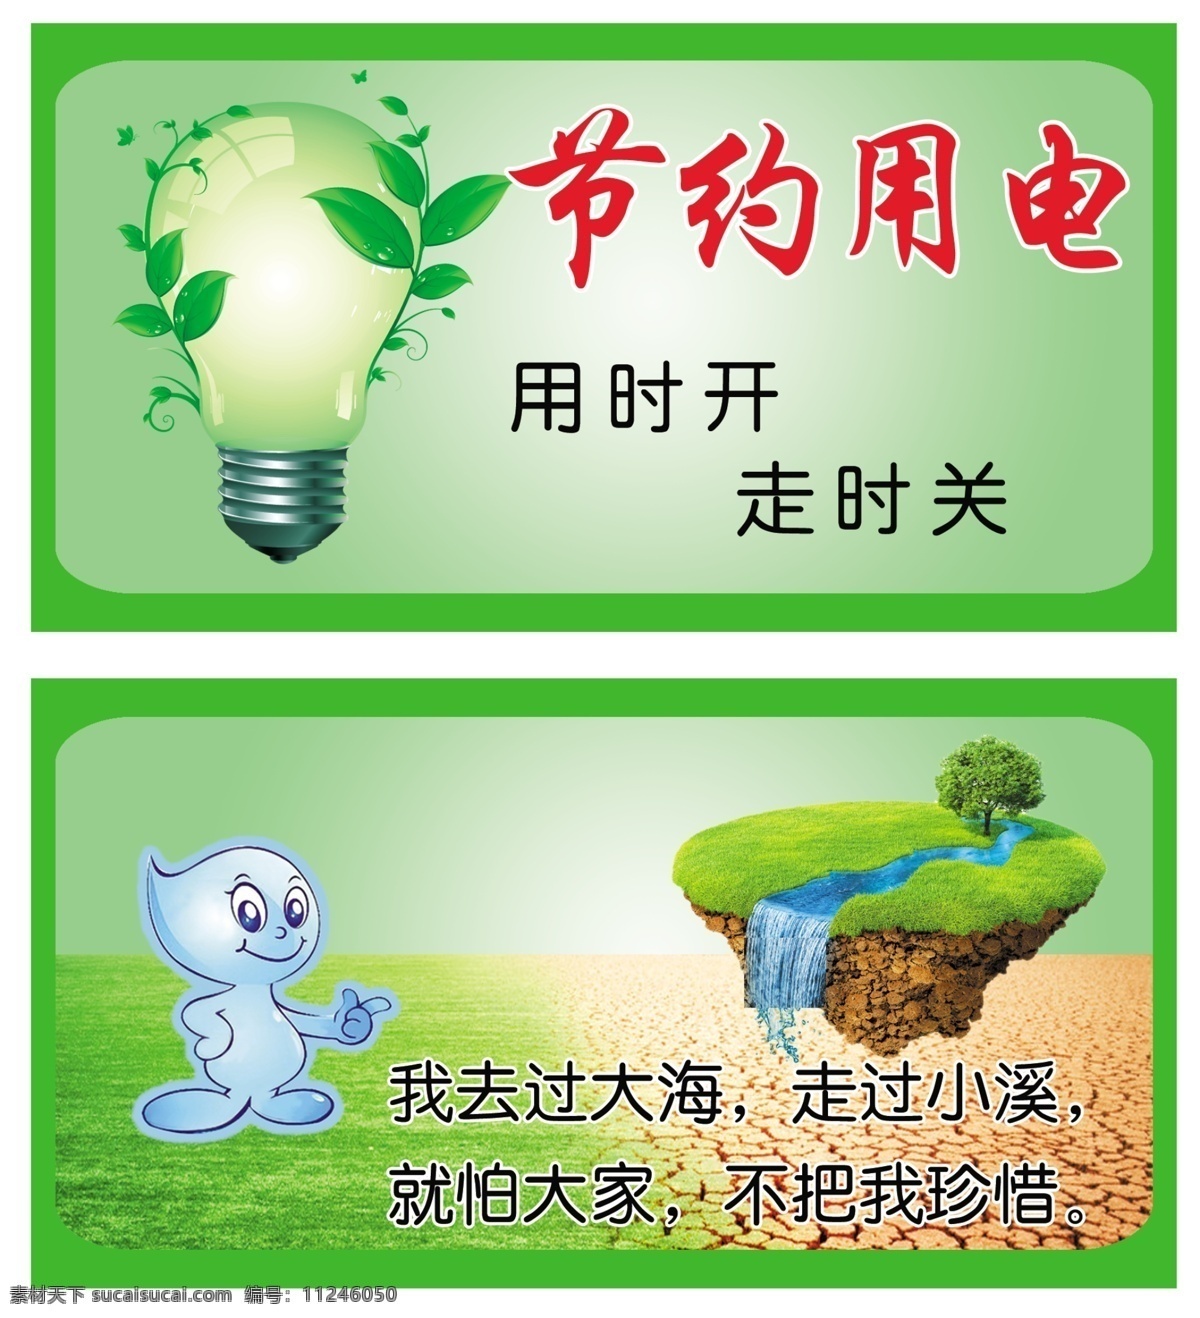 节约水电 节约用水 节约用电 水 灯泡 节能 草坪 大海 绿色 广告设计模板 源文件